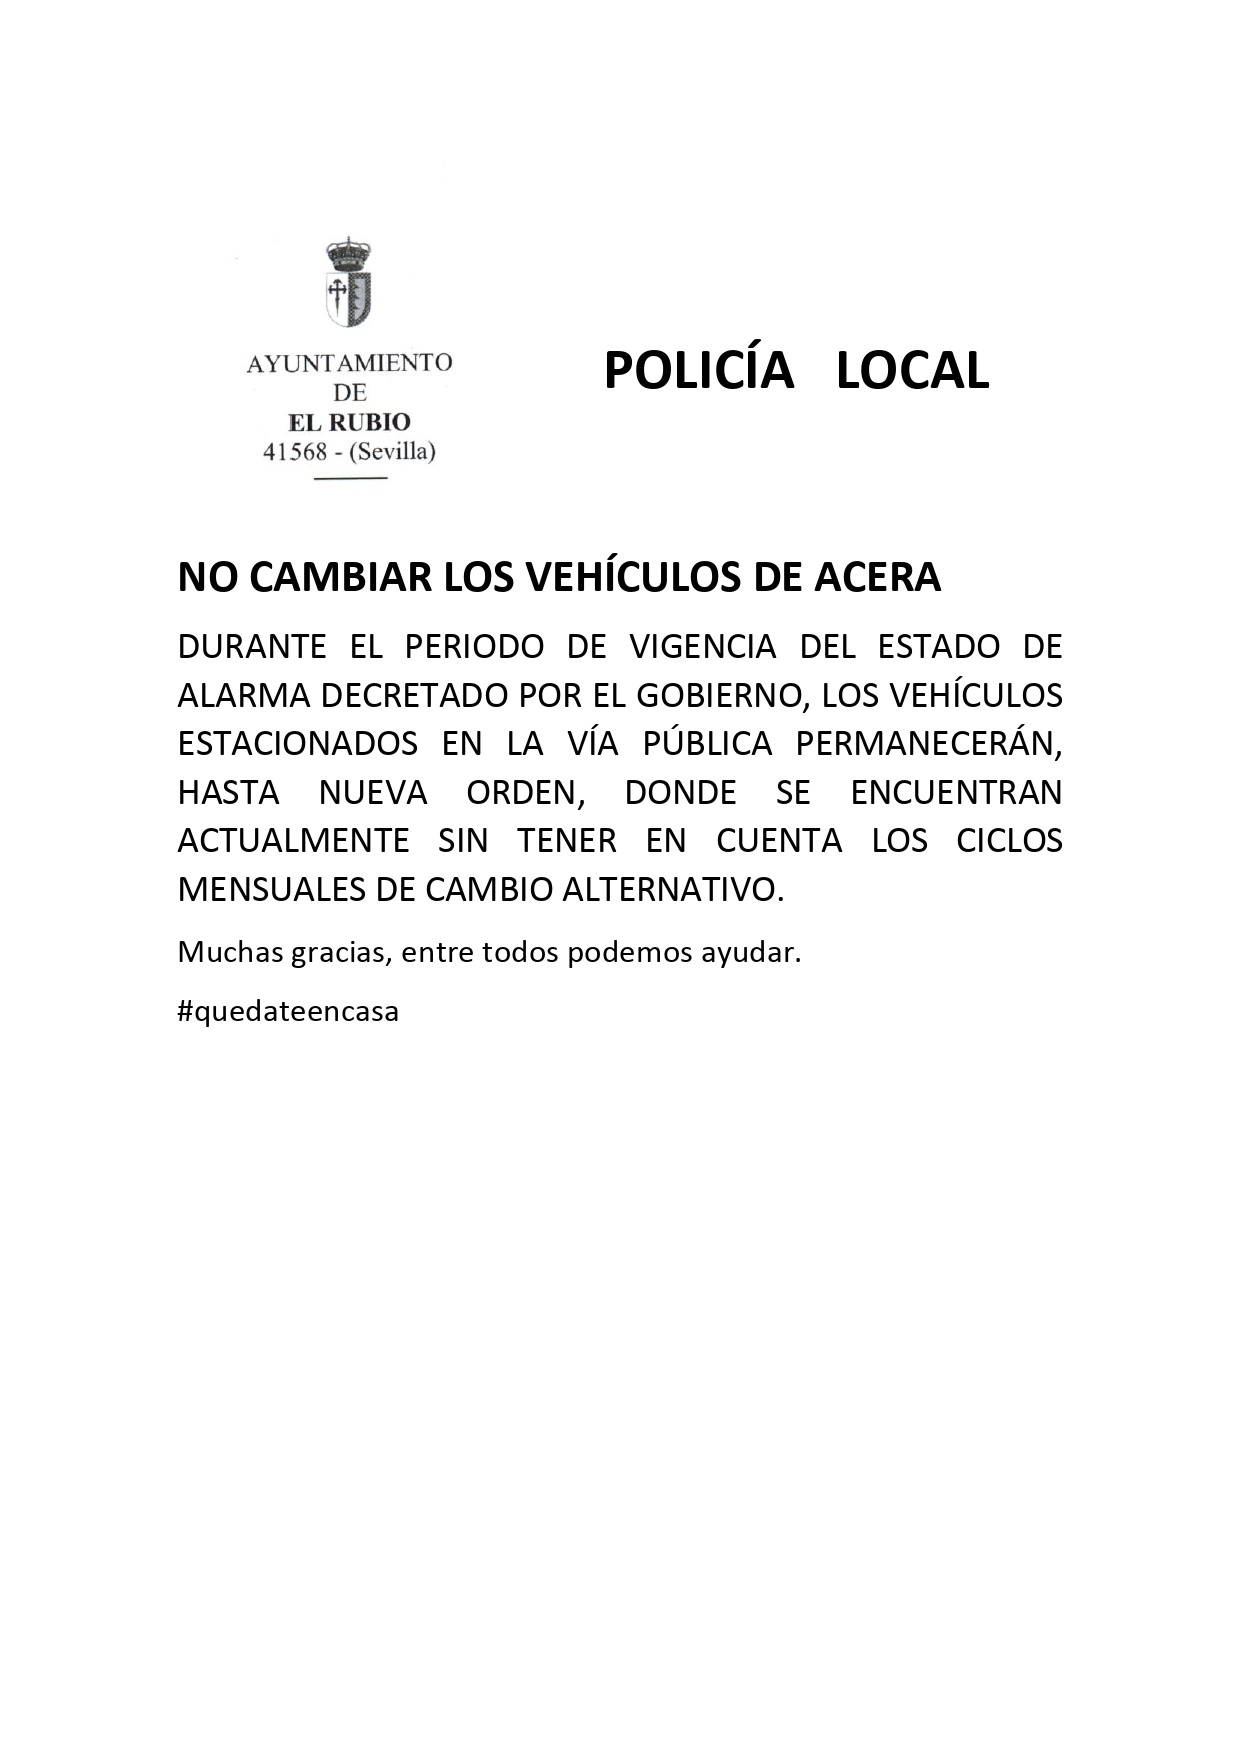 28.-NO CAMBIAR VEHÍCULOS MIENTRAS ESTÉ EN VIGOR ESTADO DE ALARMA_page-0001